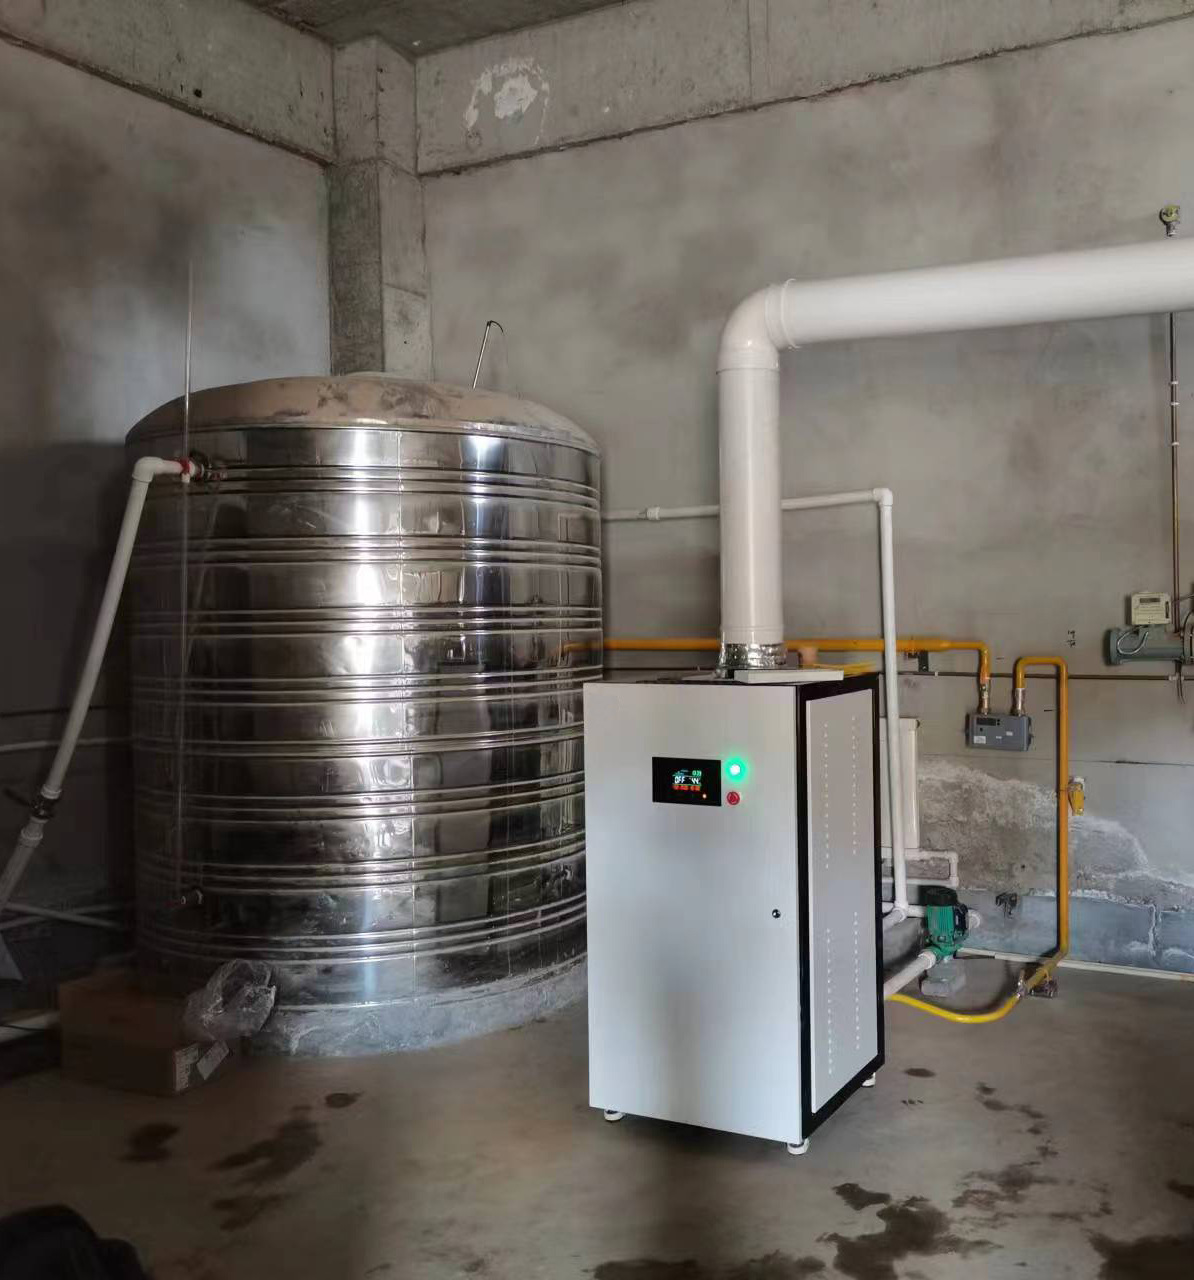 100KW匠奥燃气冷凝模块热水炉根据储水箱水温控制燃烧与水泵启停